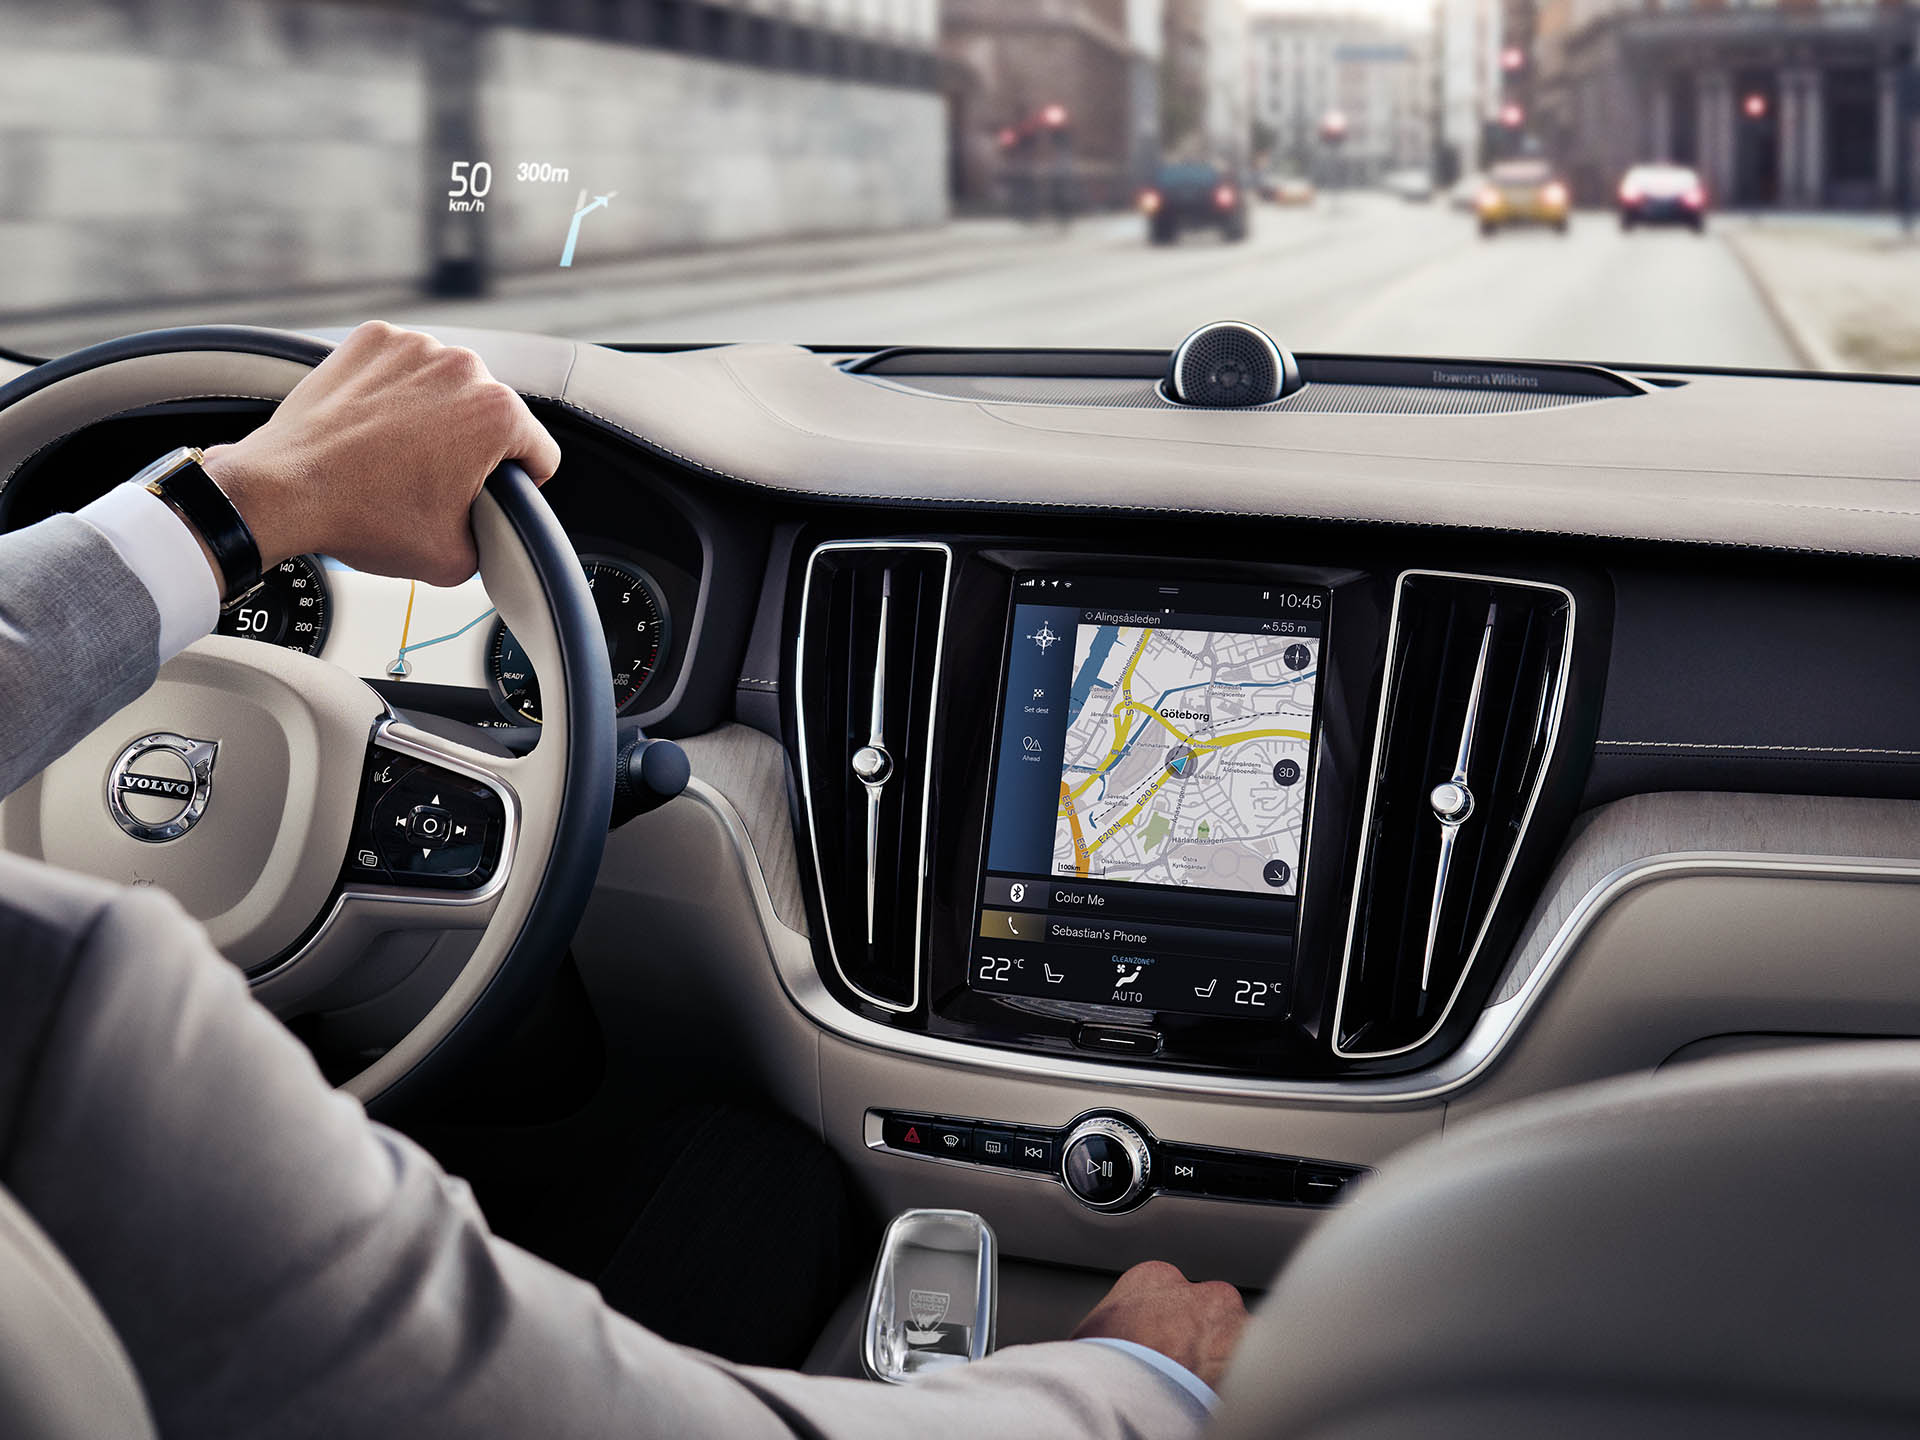 Unutrašnjost Volvo limuzine, muškarac vozi putem uz pomoć sistema za navigaciju